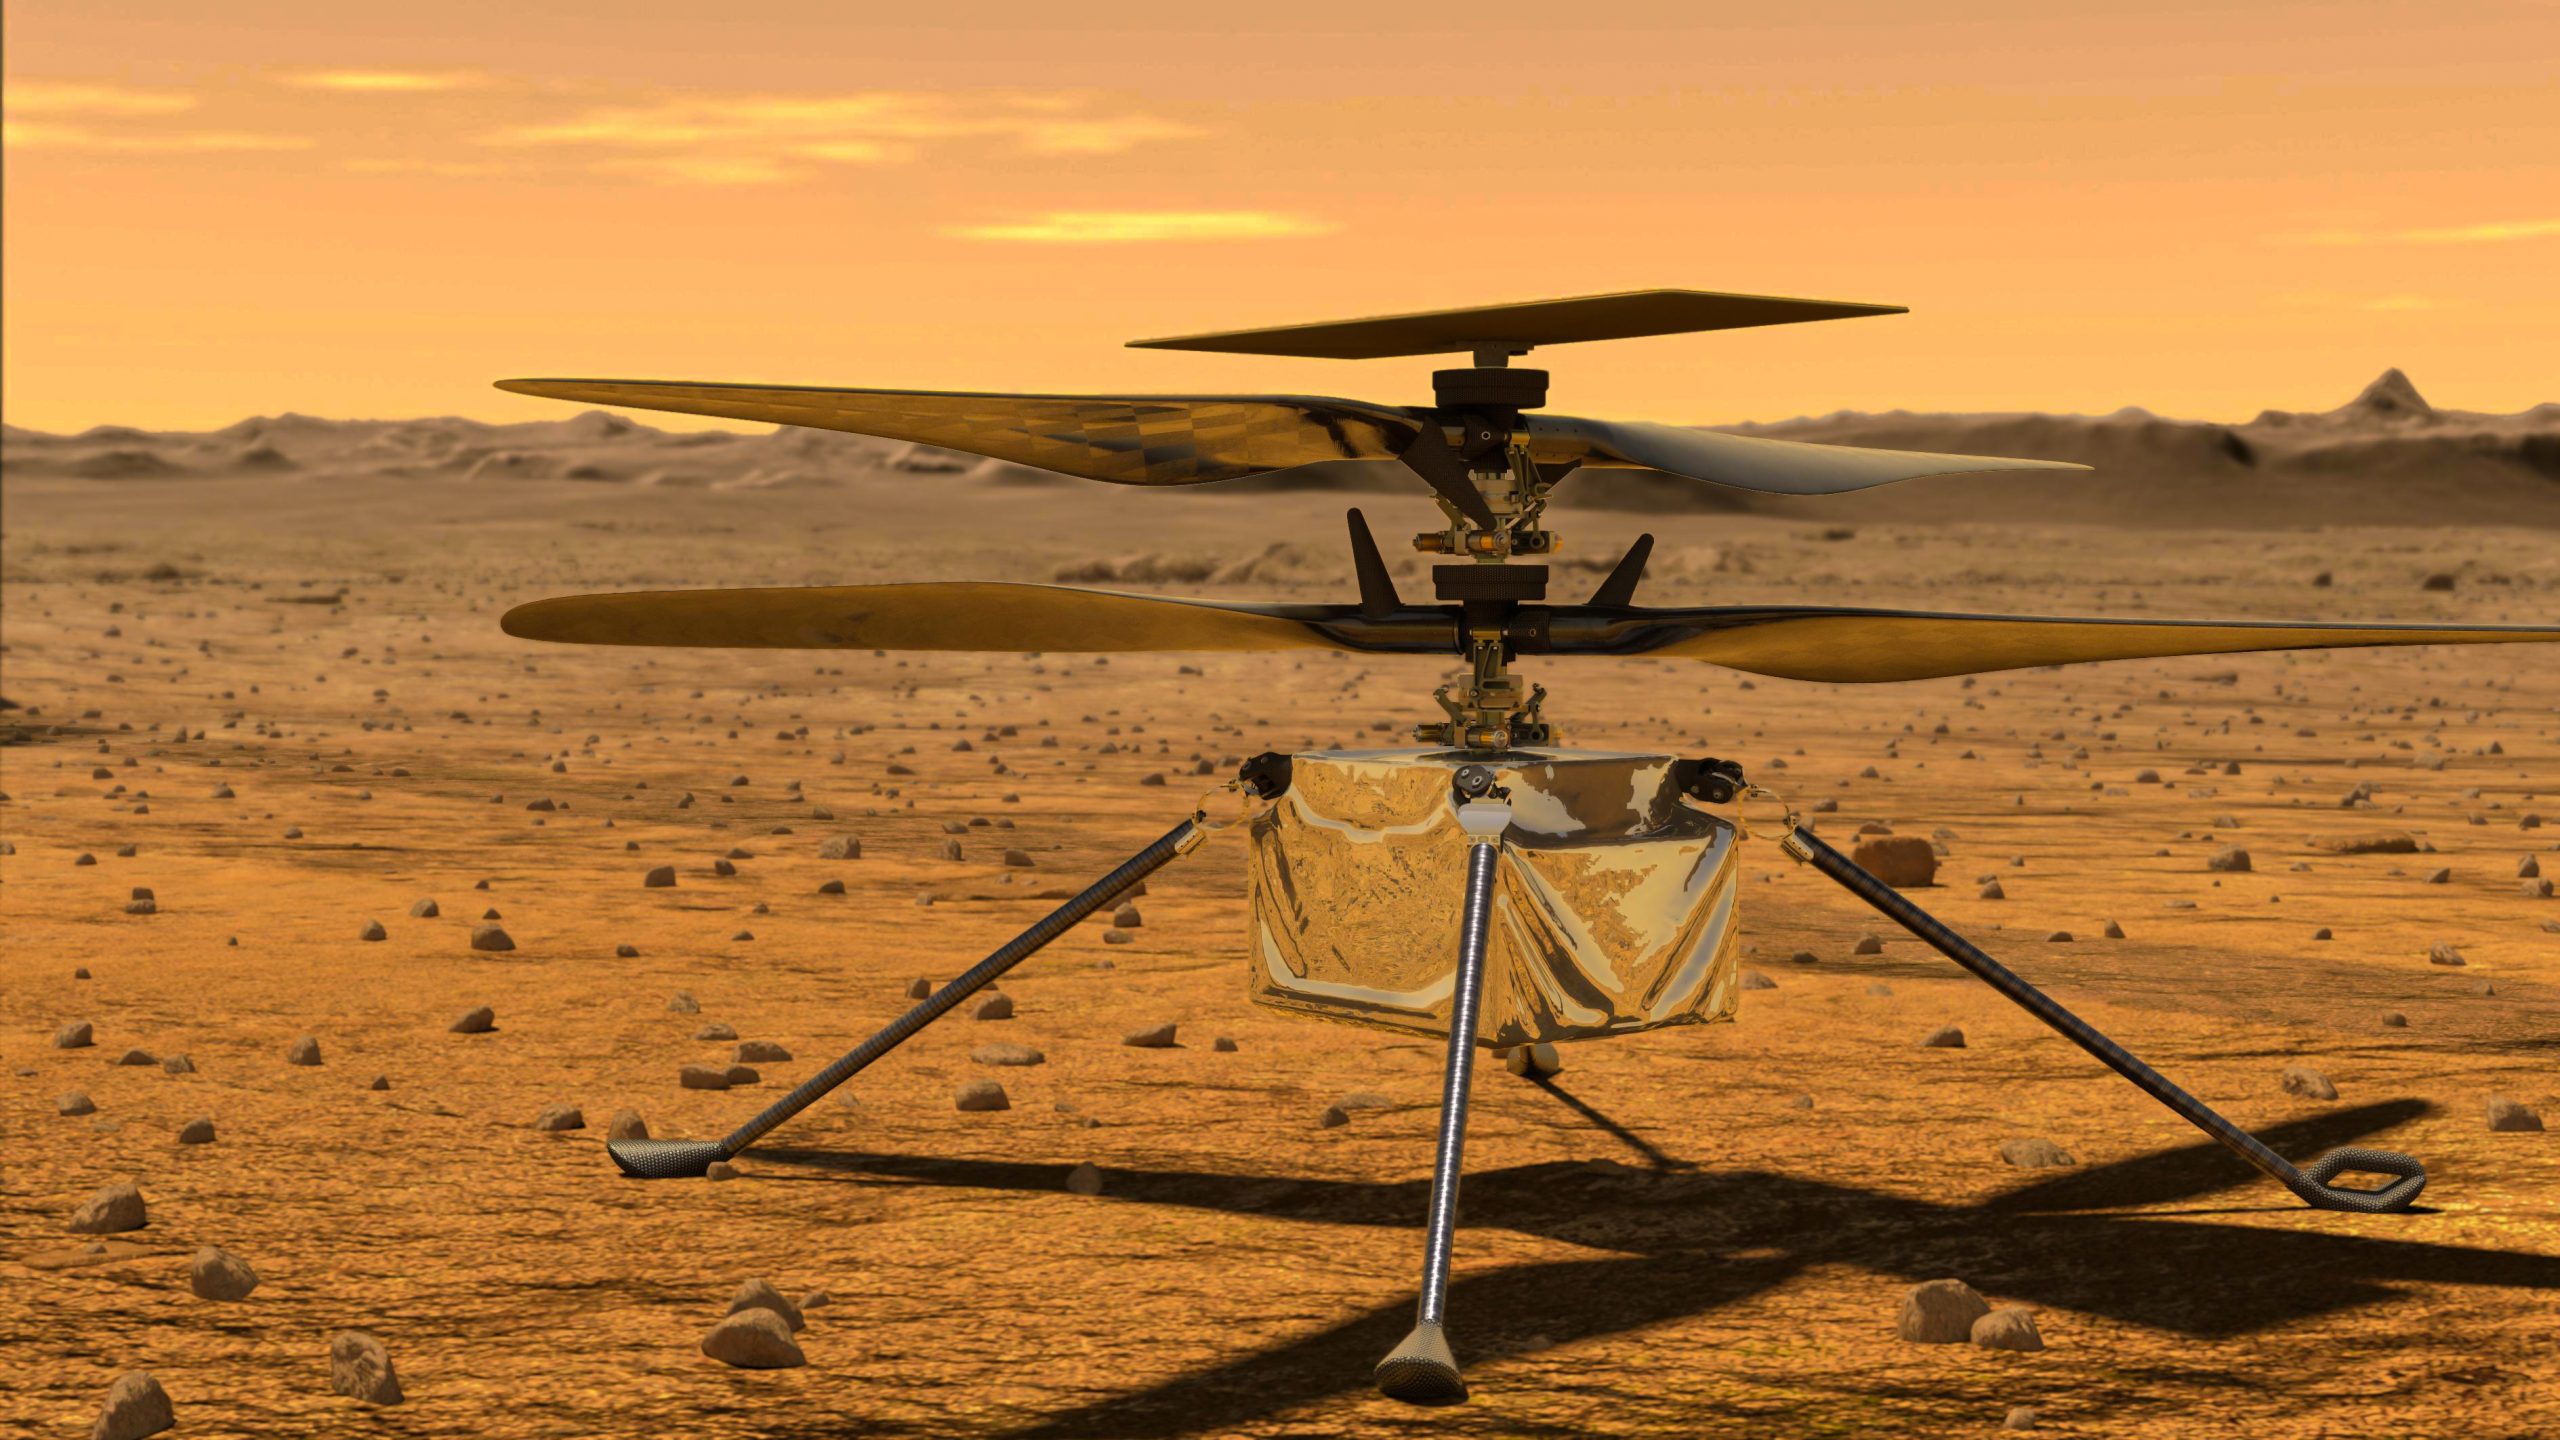 La NASA rétablit le contact avec l’hélicoptère Ingenuity sur Mars après une perte de communication - Image